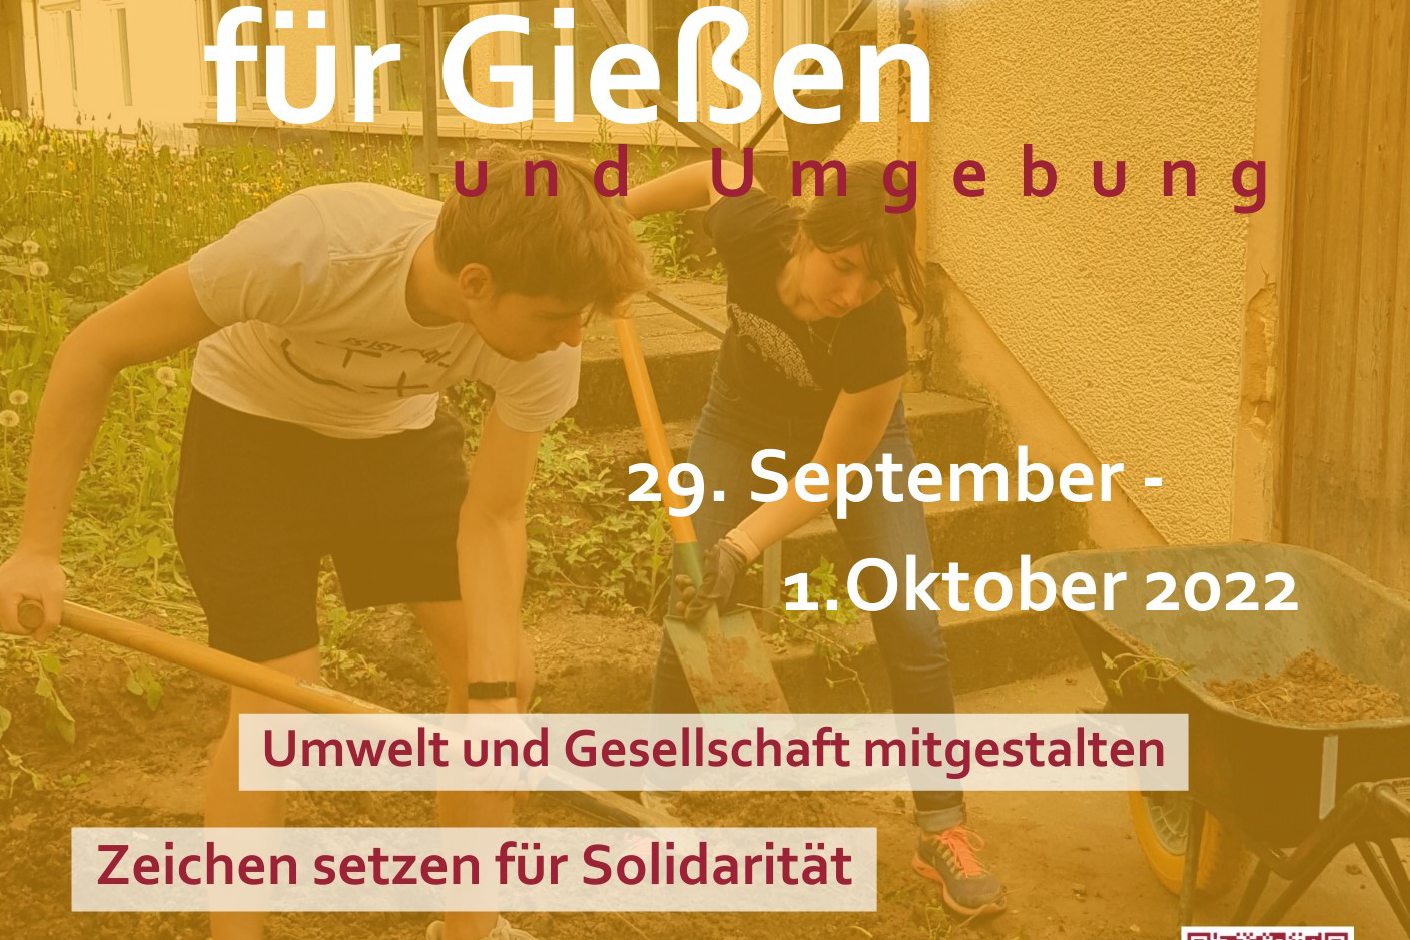 Aktion 3 Tage für Gießen und Umgebung